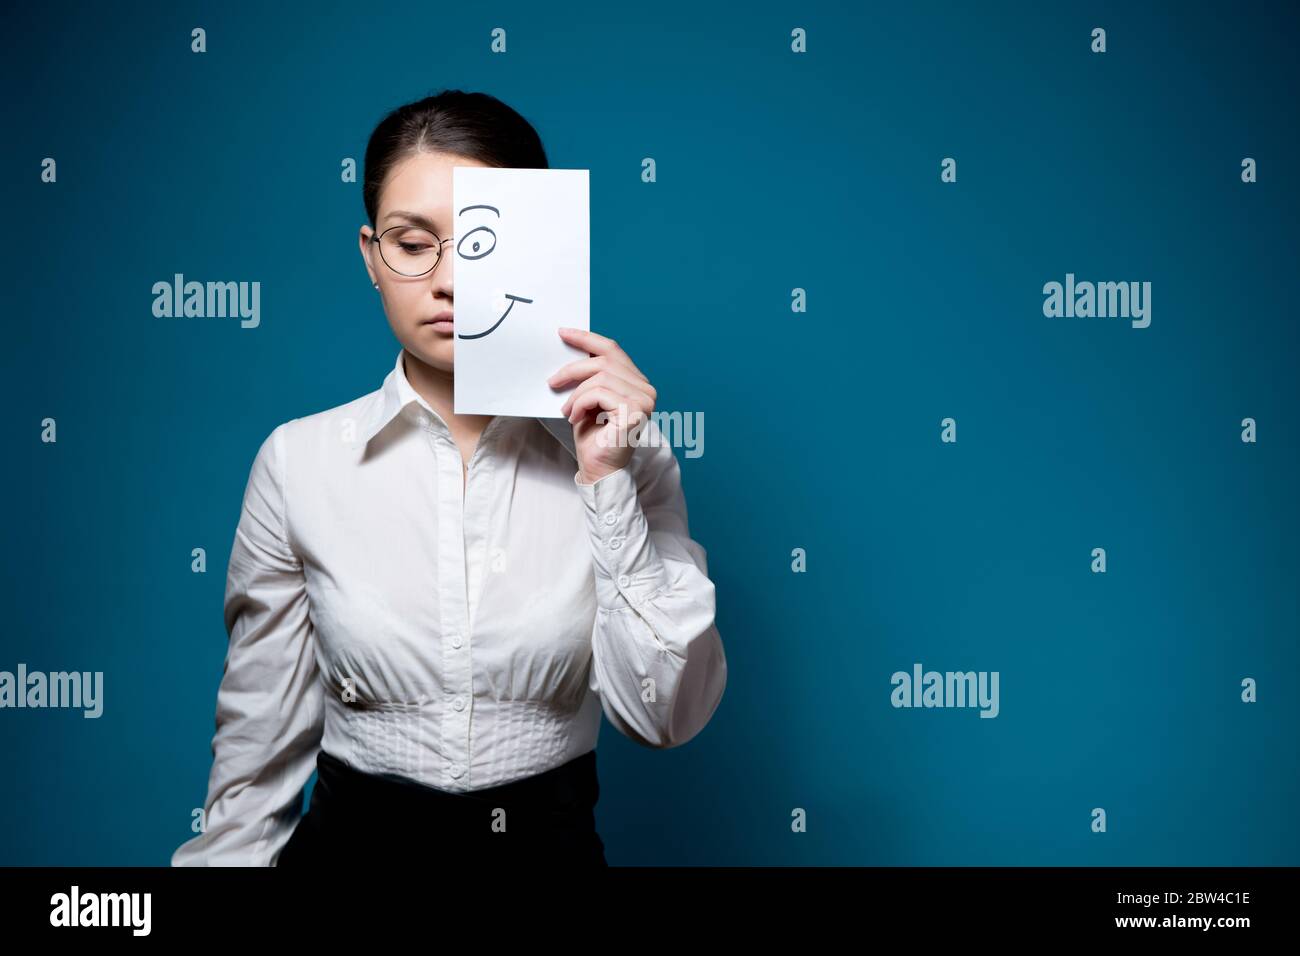 une femme sans émotion avec des lunettes et une chemise blanche la cache yeux et couvre la moitié de son visage avec un morceau o papier peint avec un sourire Banque D'Images